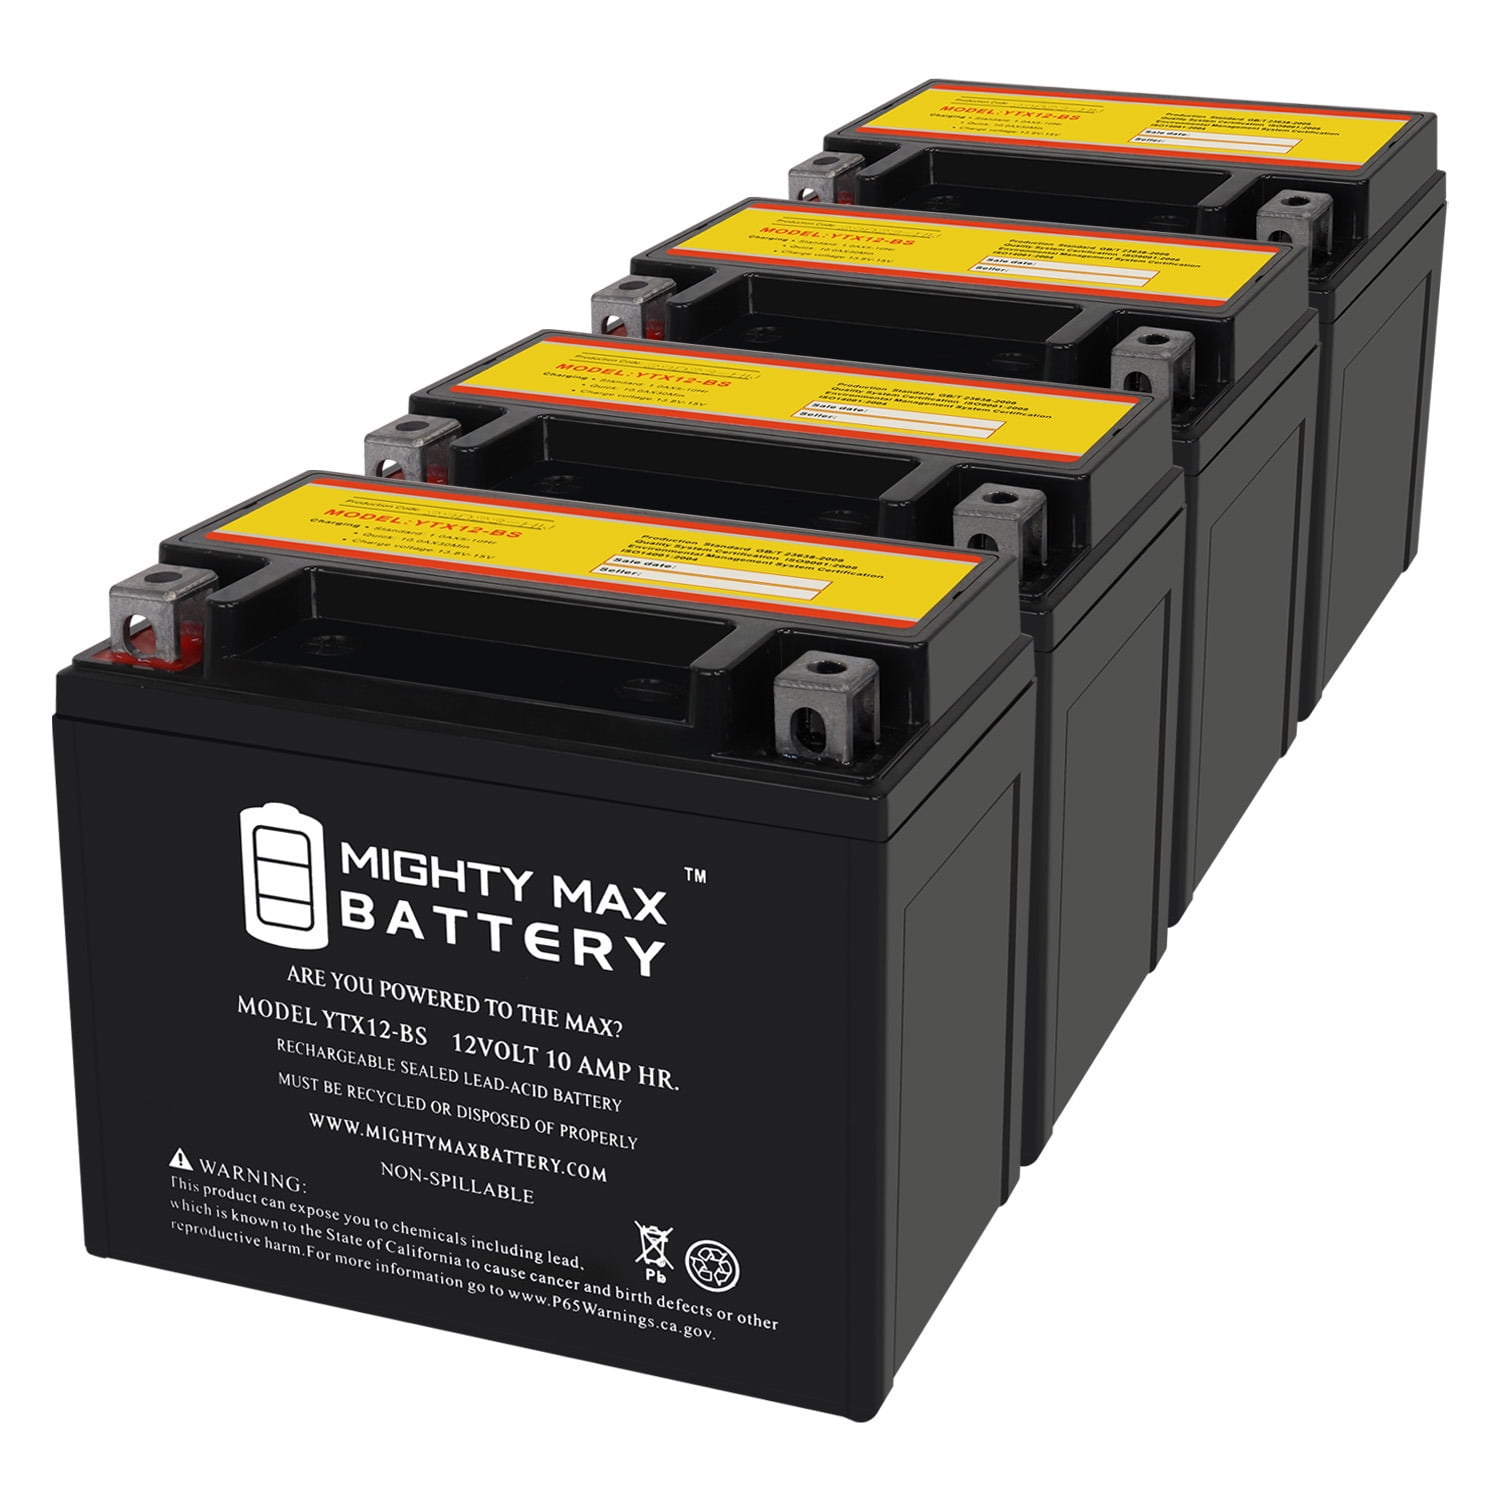 Batterie 12 Volt 10 Ah YTX12 BS auf Electro Fun. Günstige Preise